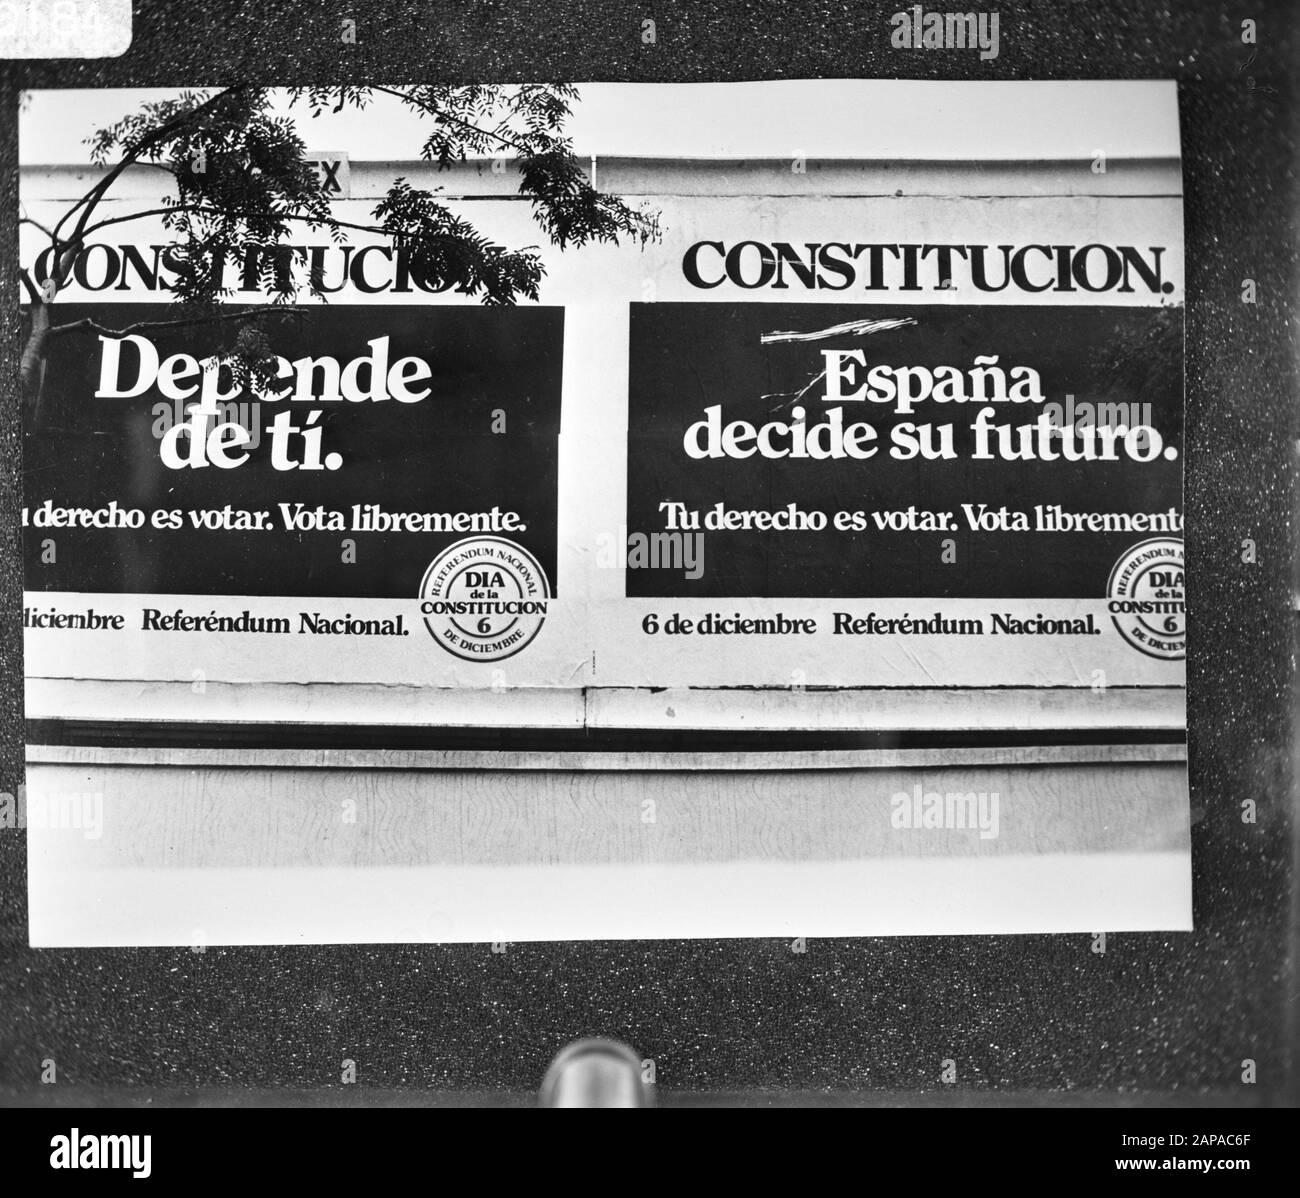 Poster in Spagna in relazione alle elezioni sulla nuova costituzione 6 dicembre prossimo Data: 28 novembre 1978 luogo: Spagna Parole Chiave: Poster, ELEZIONI Foto Stock